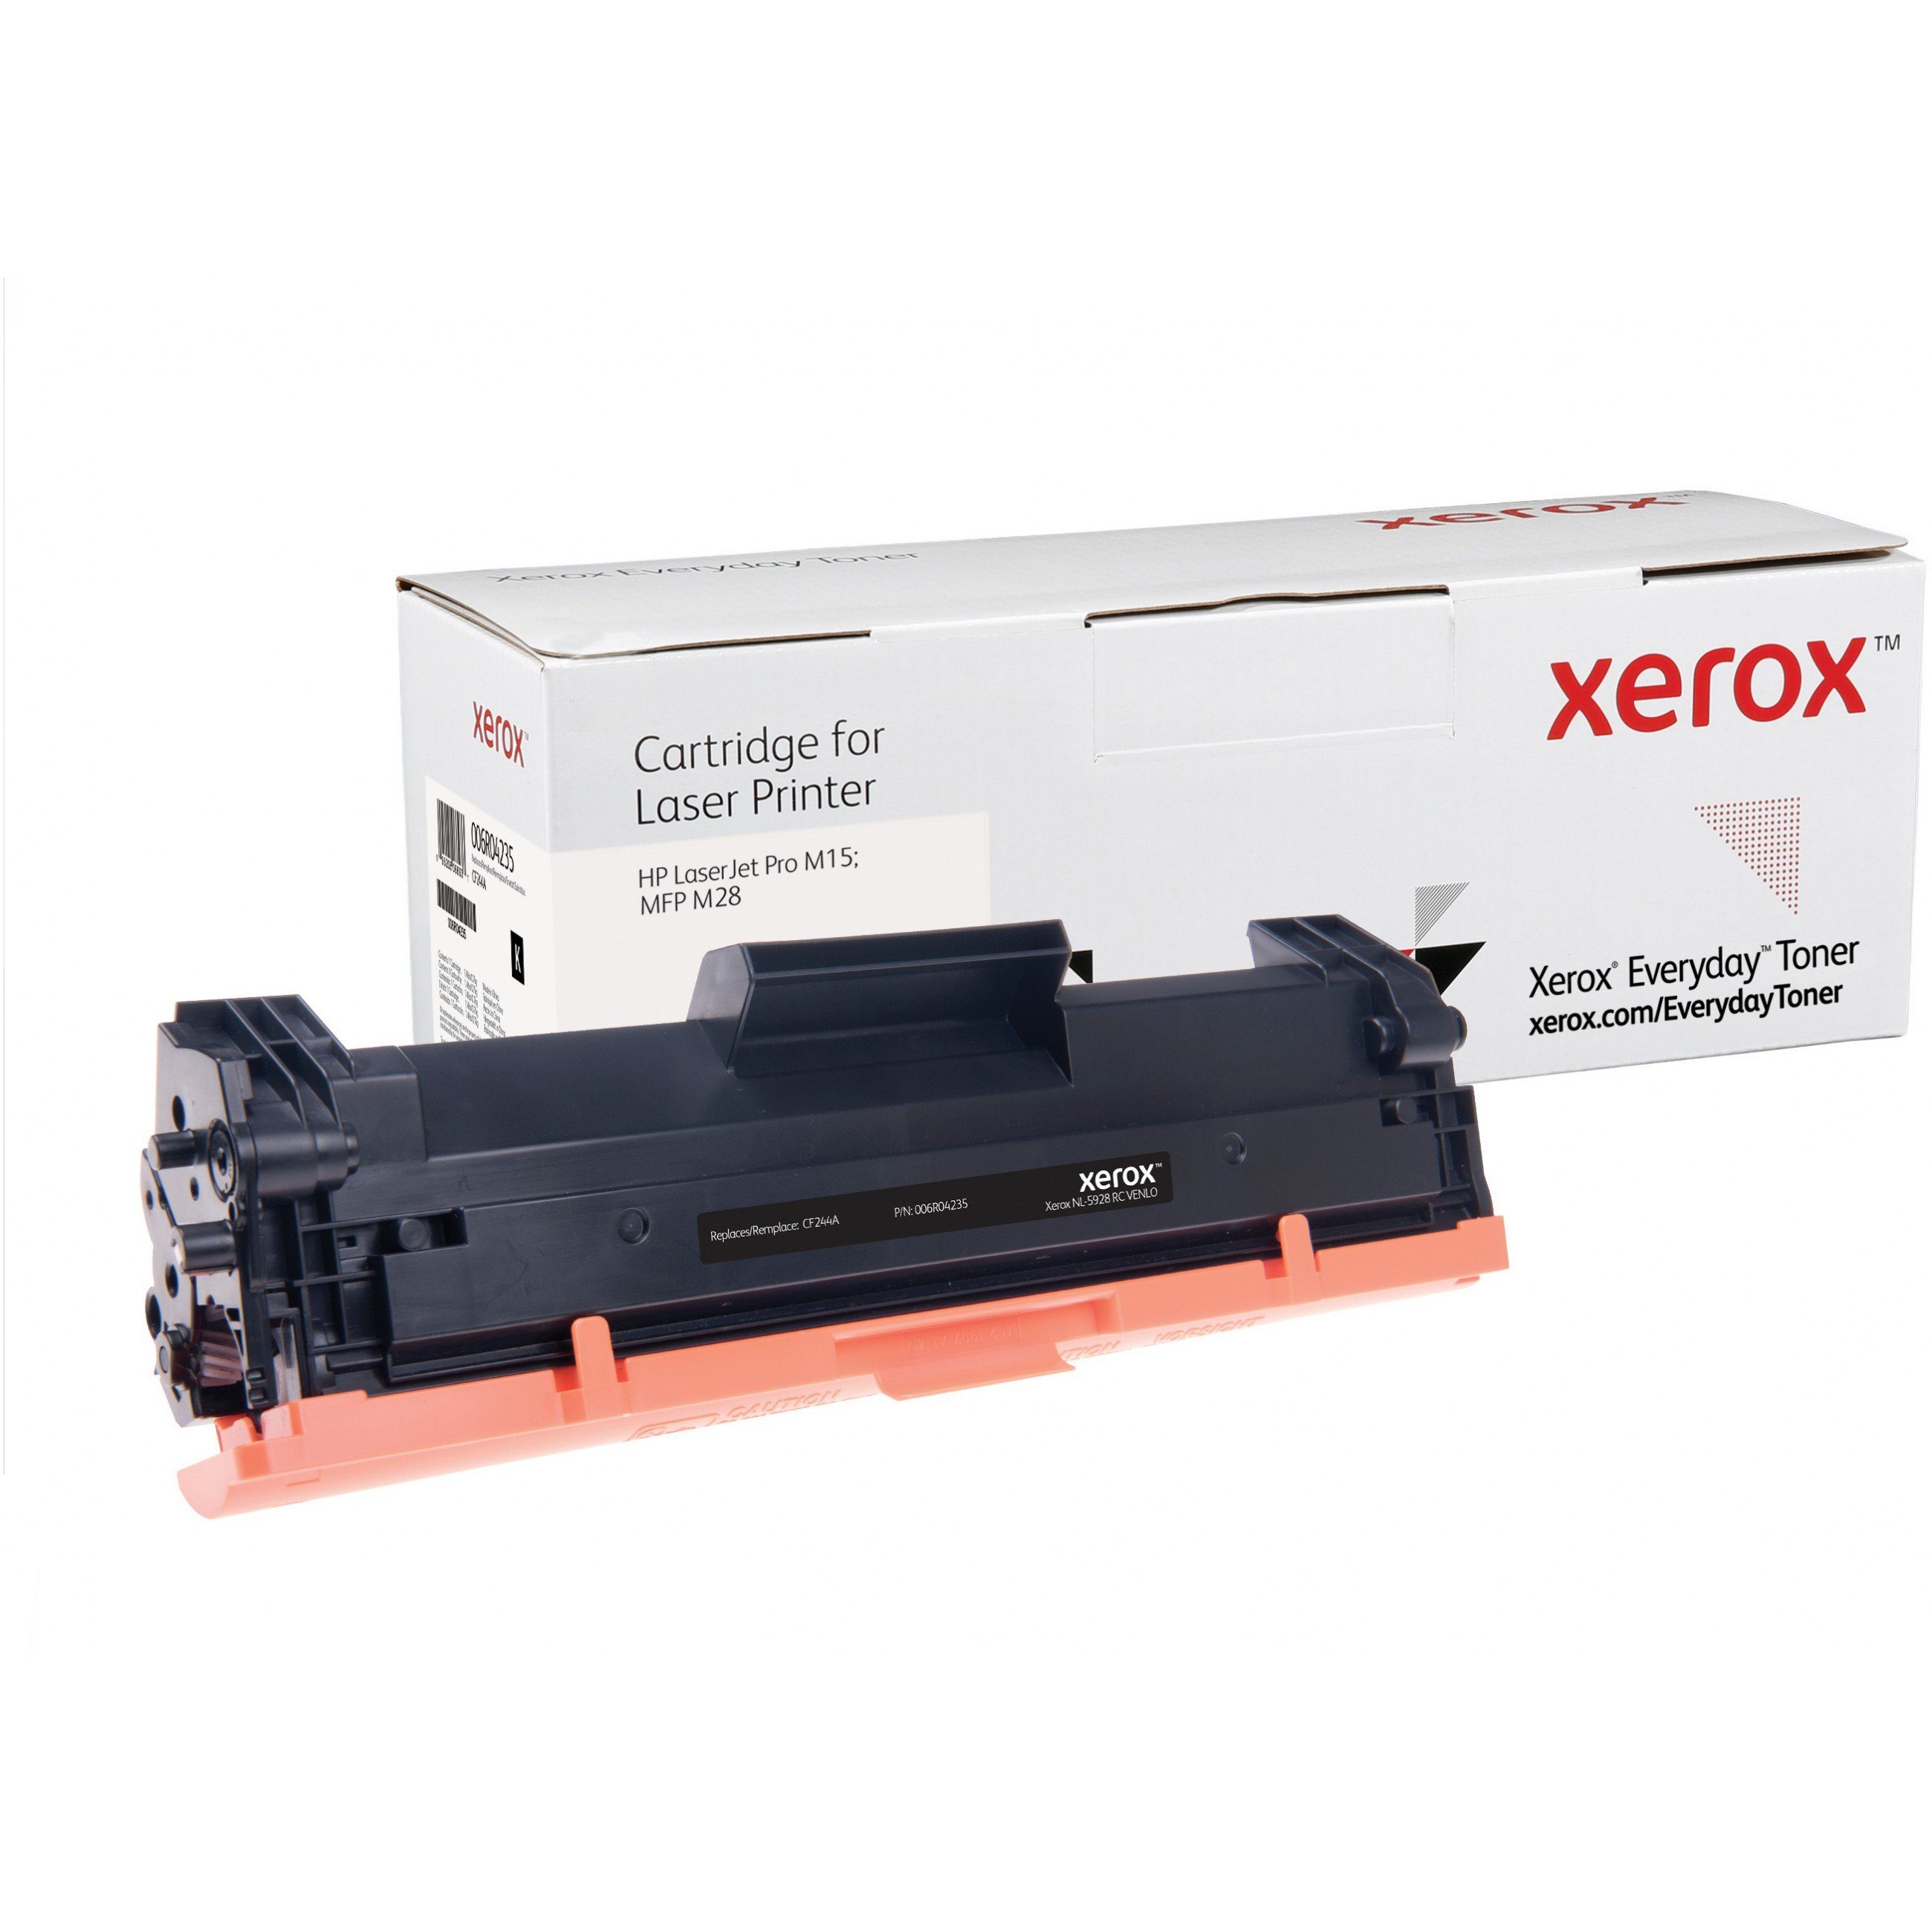 Everyday XEROX Tonerkartusche Toner Xerox cartridge Black